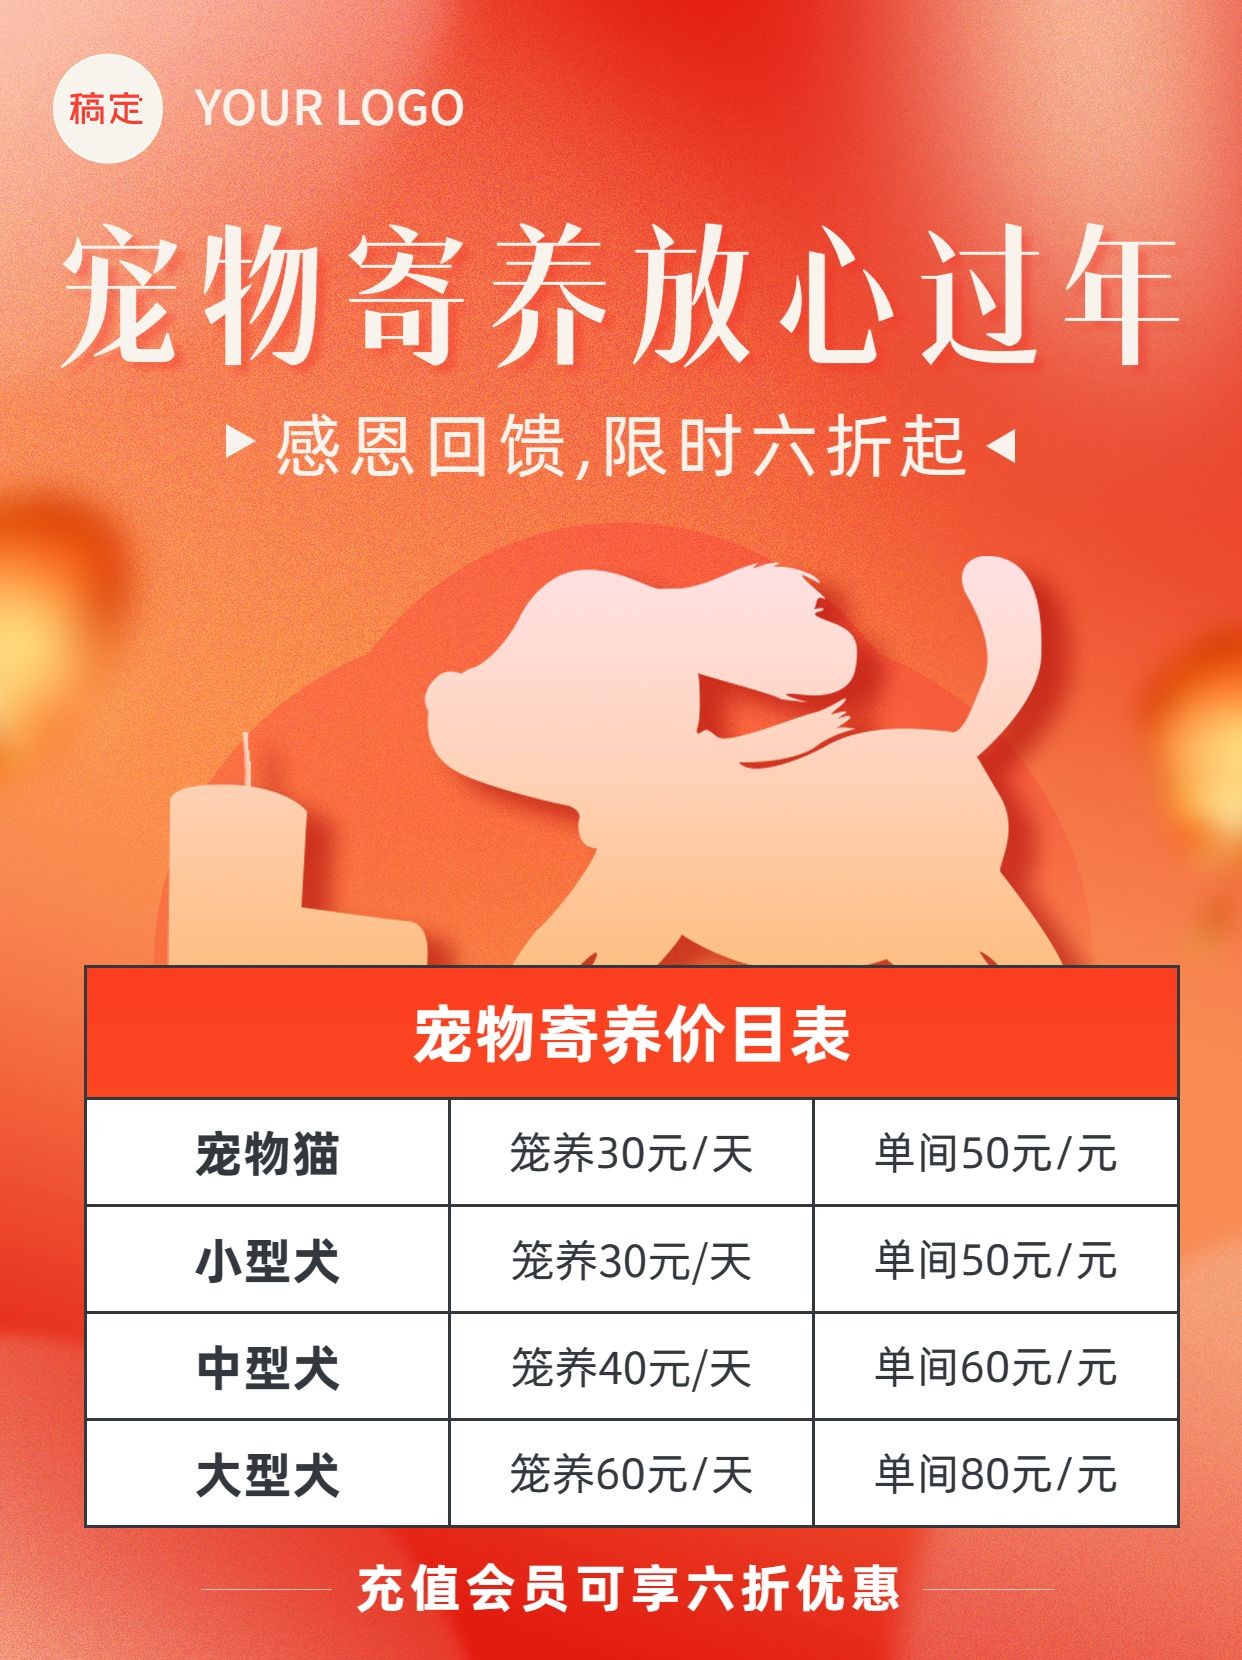 春节节日宠物寄养促销小红书配图预览效果